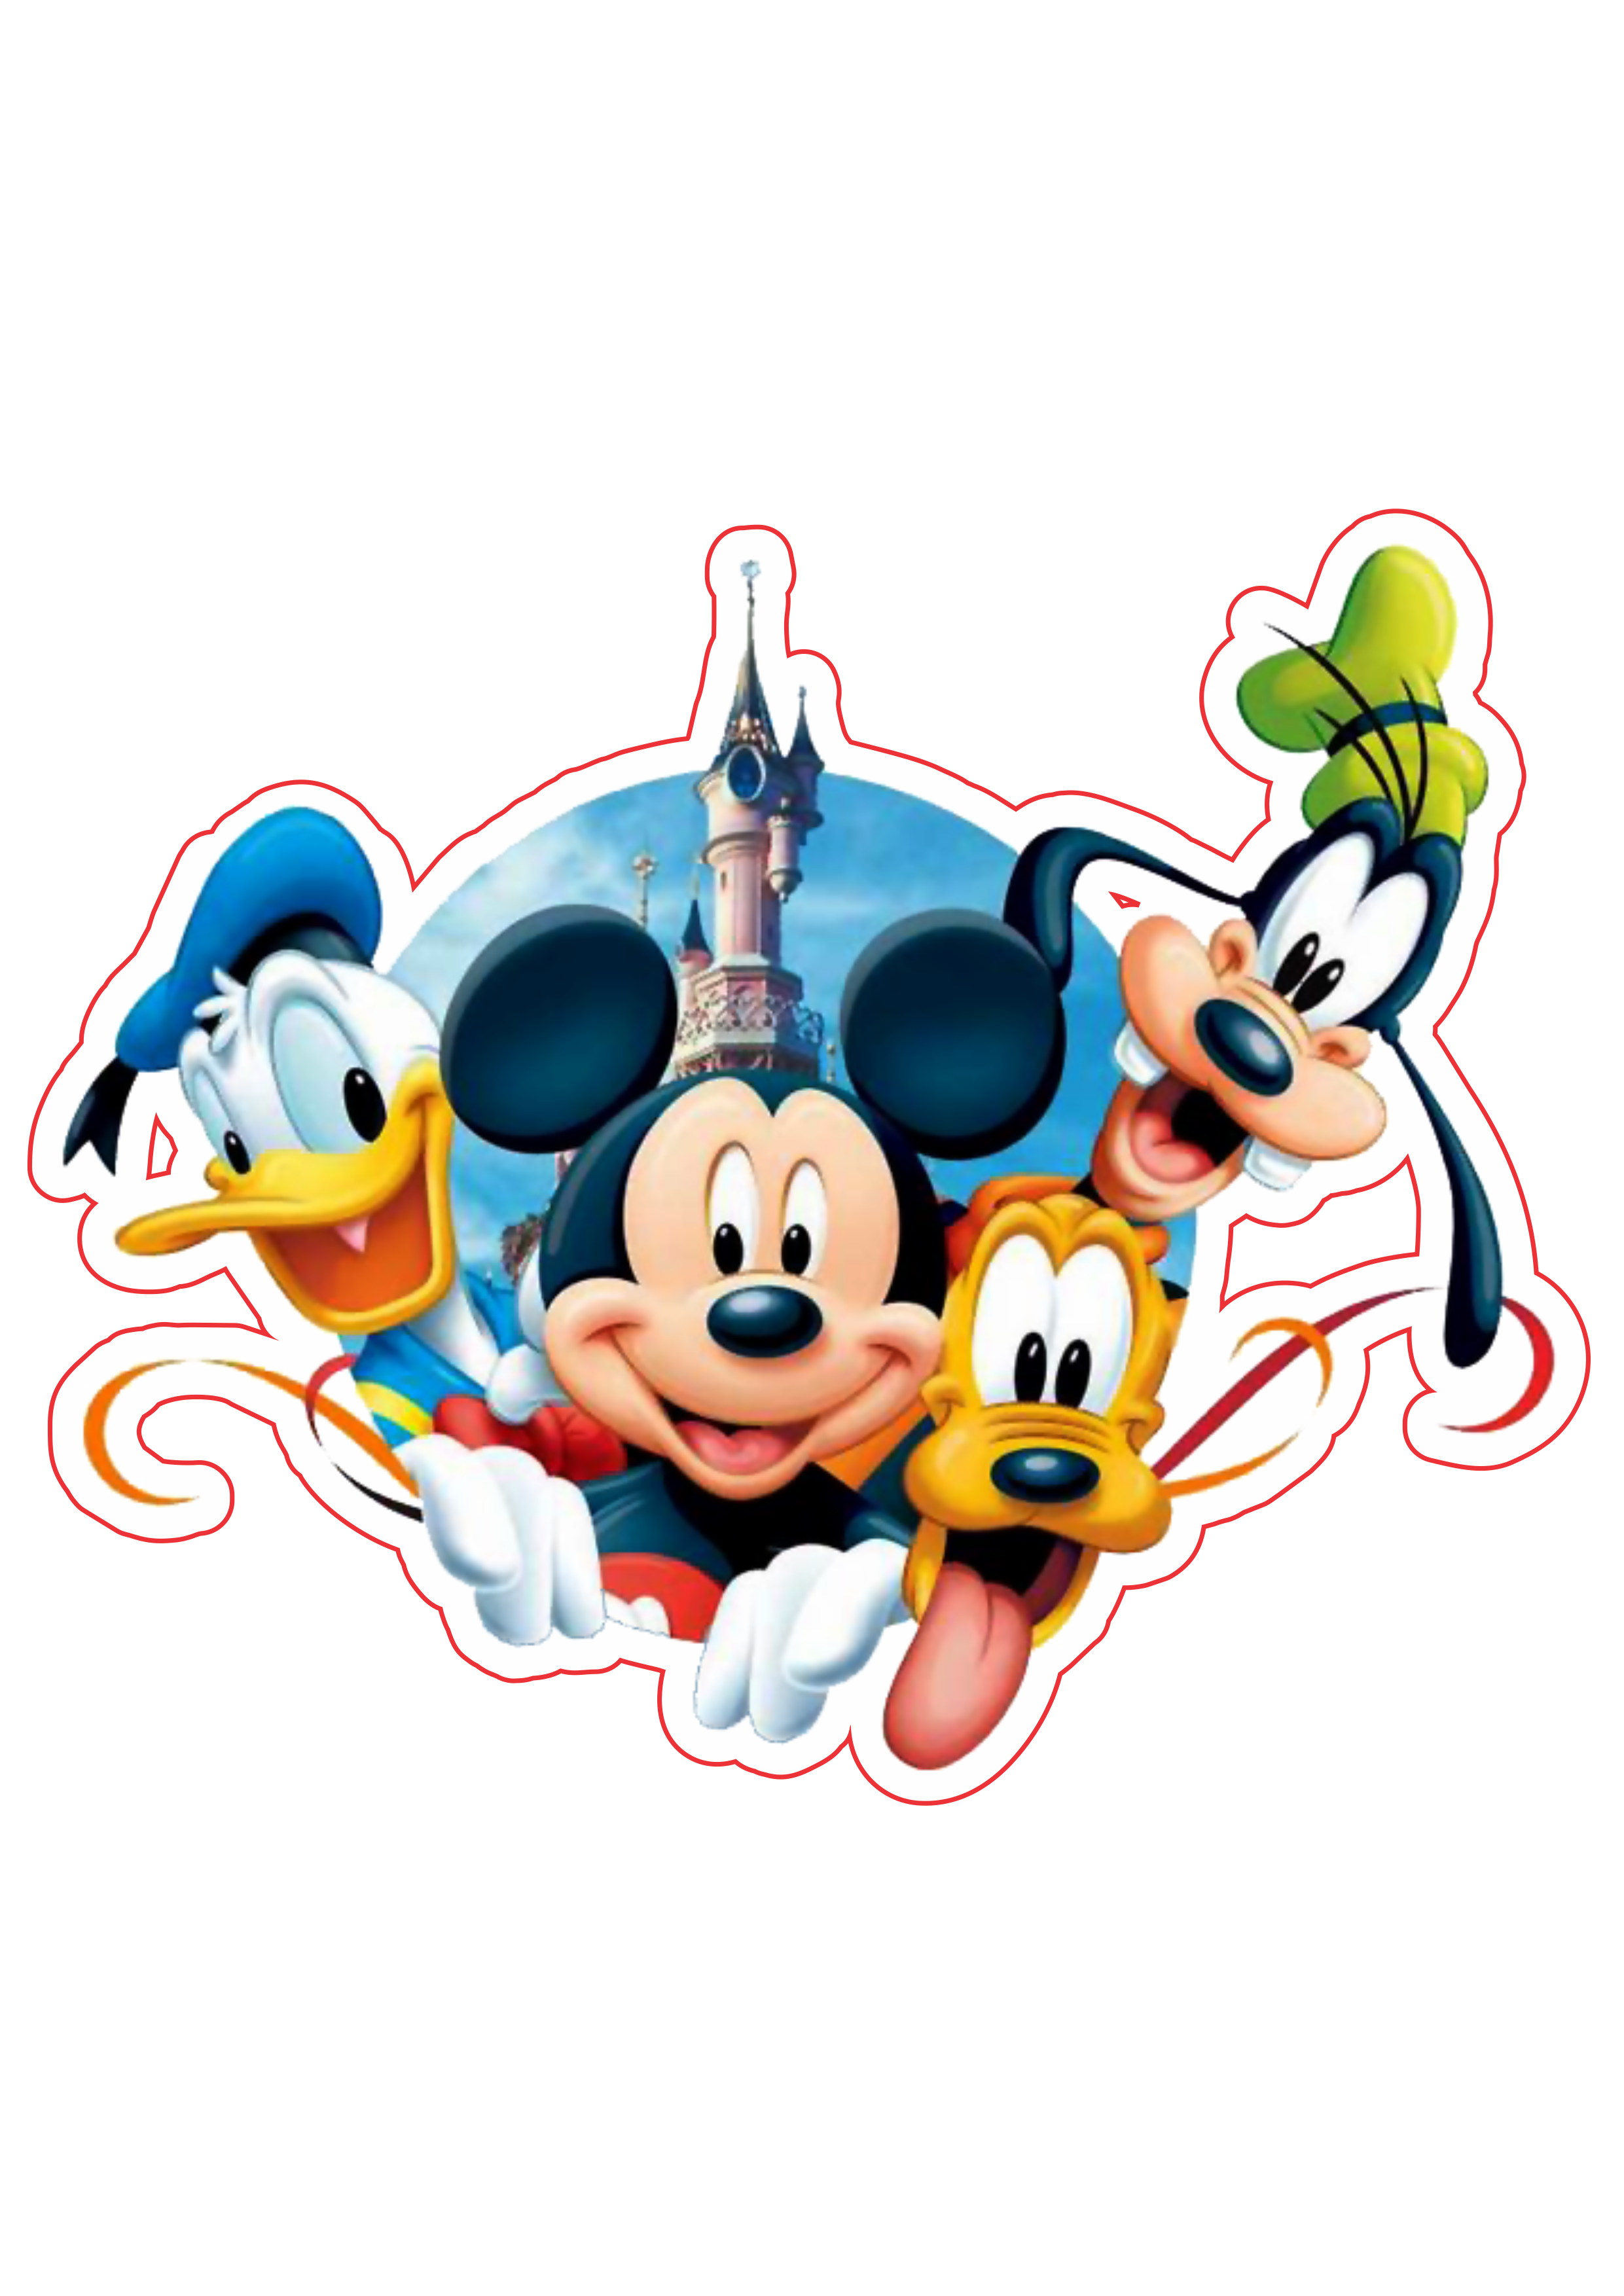 Arquivos Png Mickey e Amigos